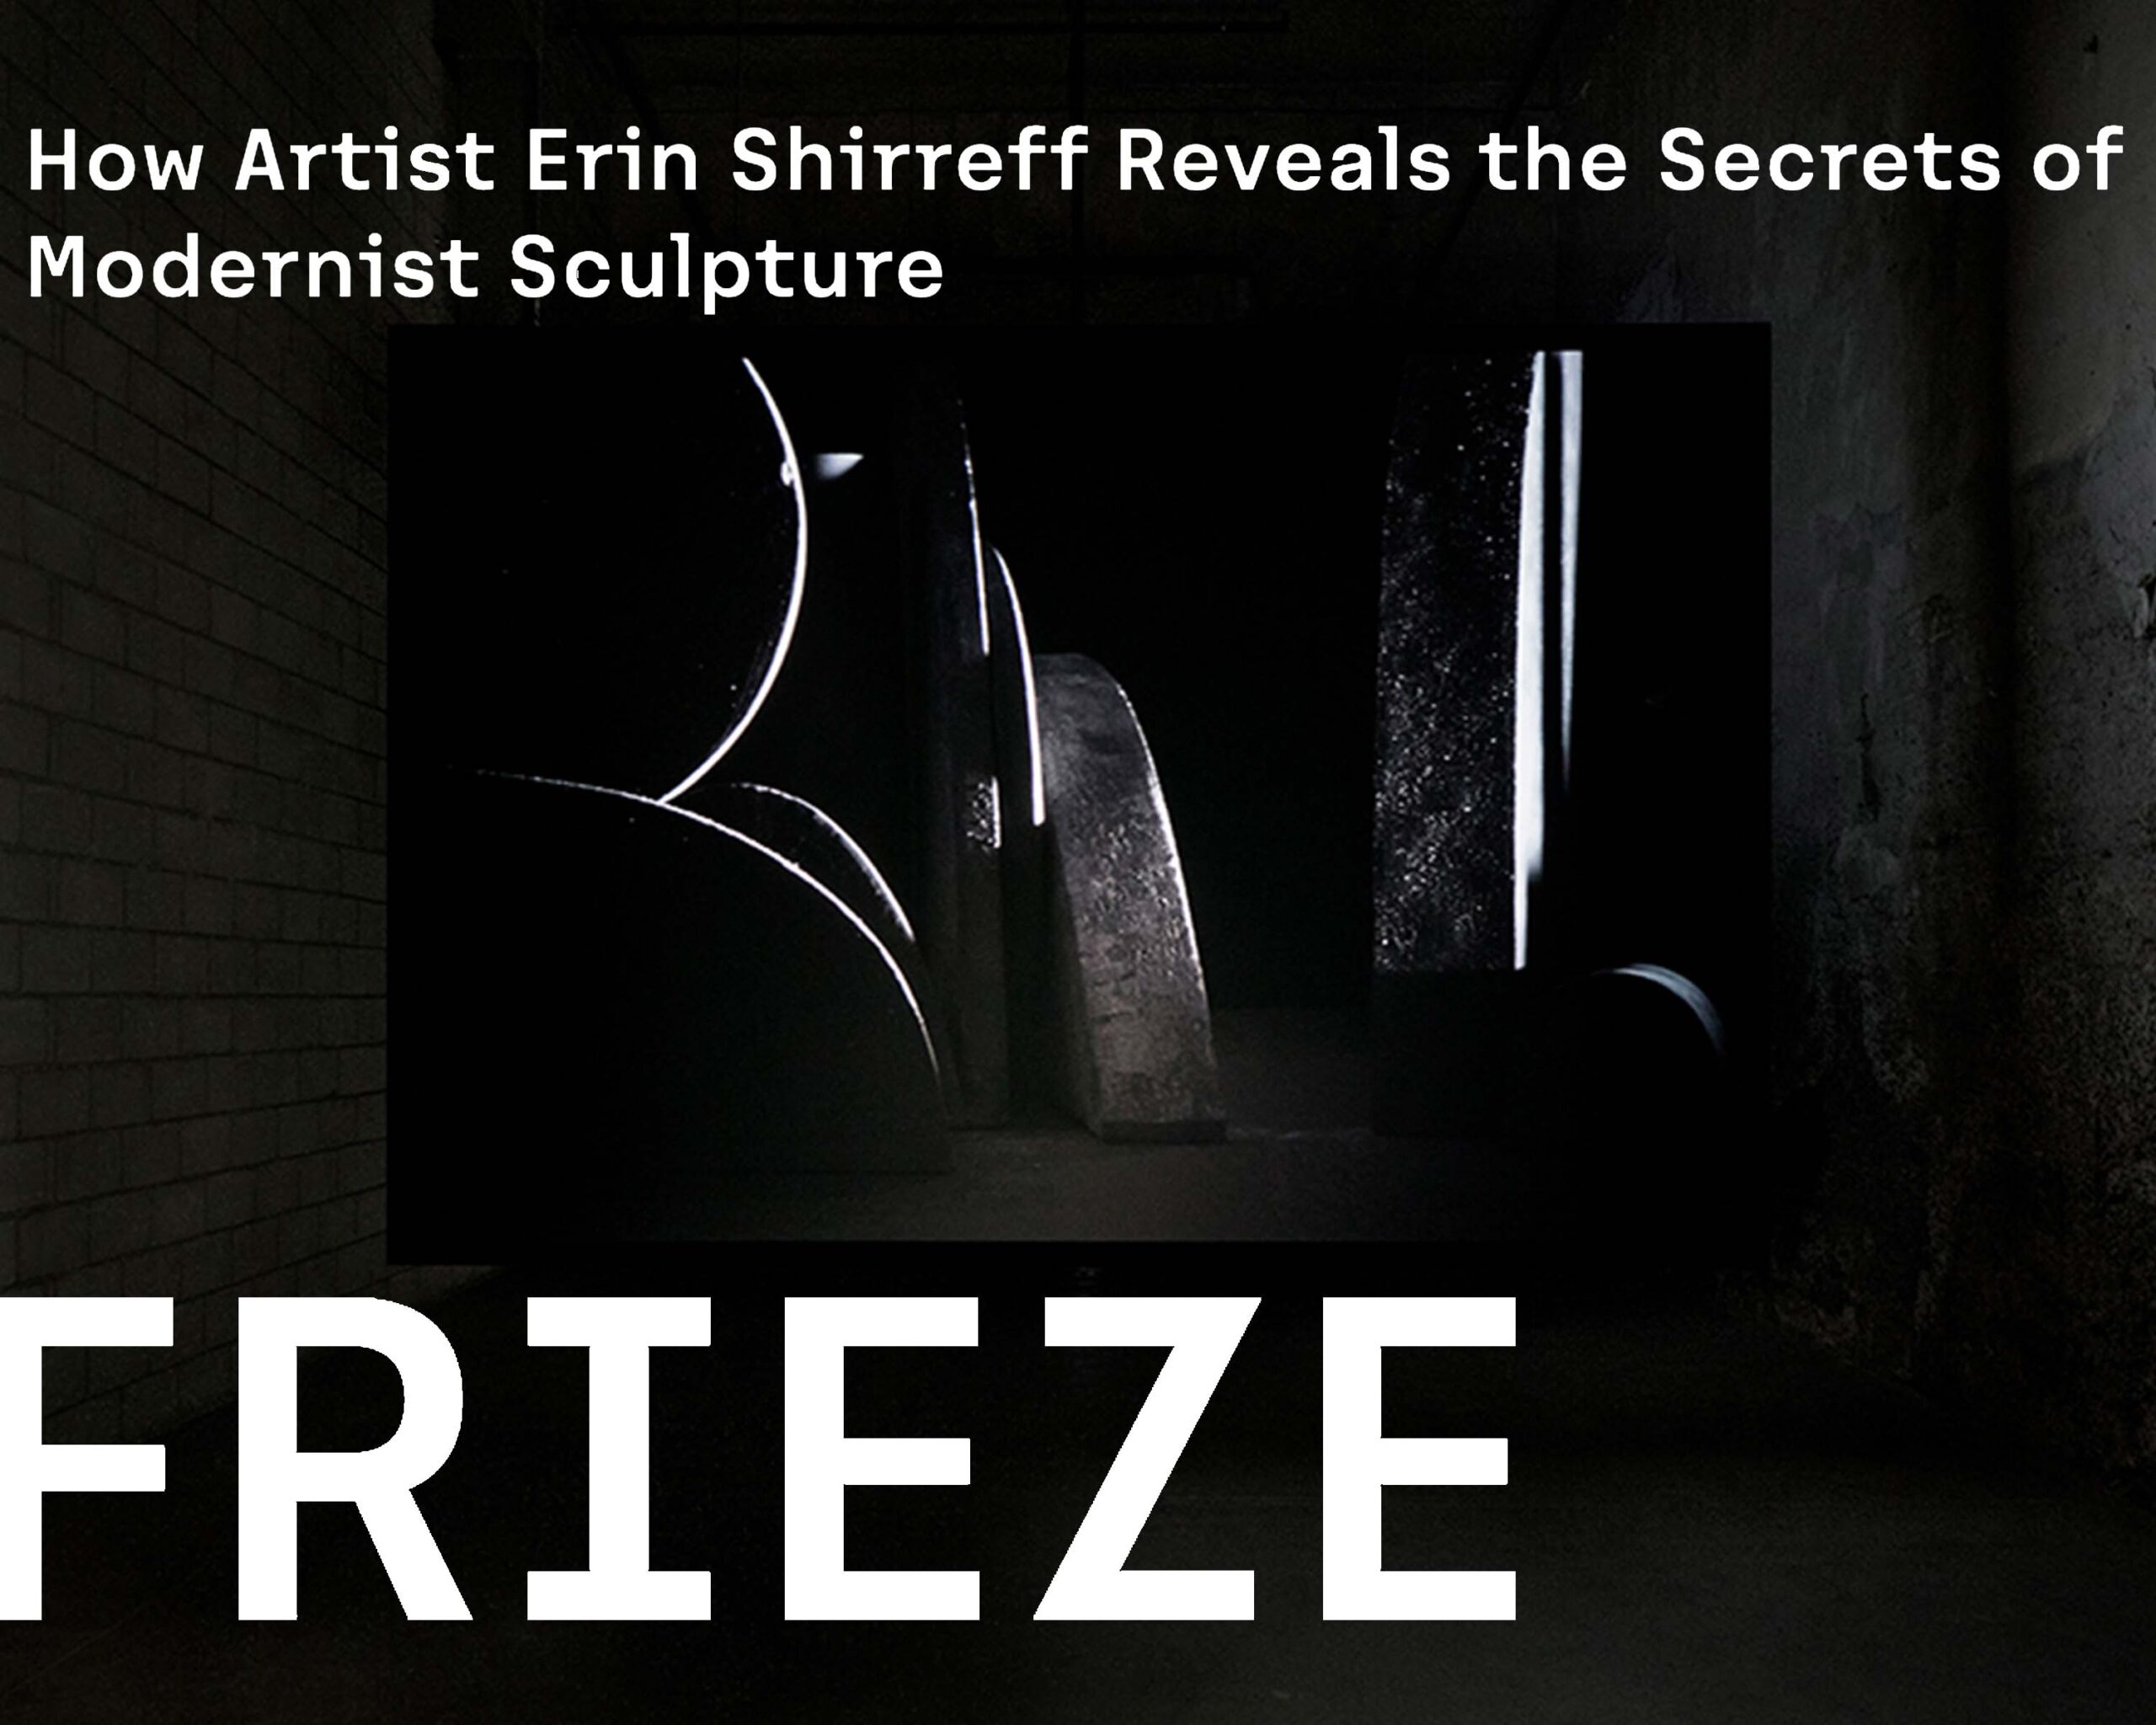 Frieze, 2019 | How Artist Erin Shirreff Reveals the Secrets of Modernist Sculpture